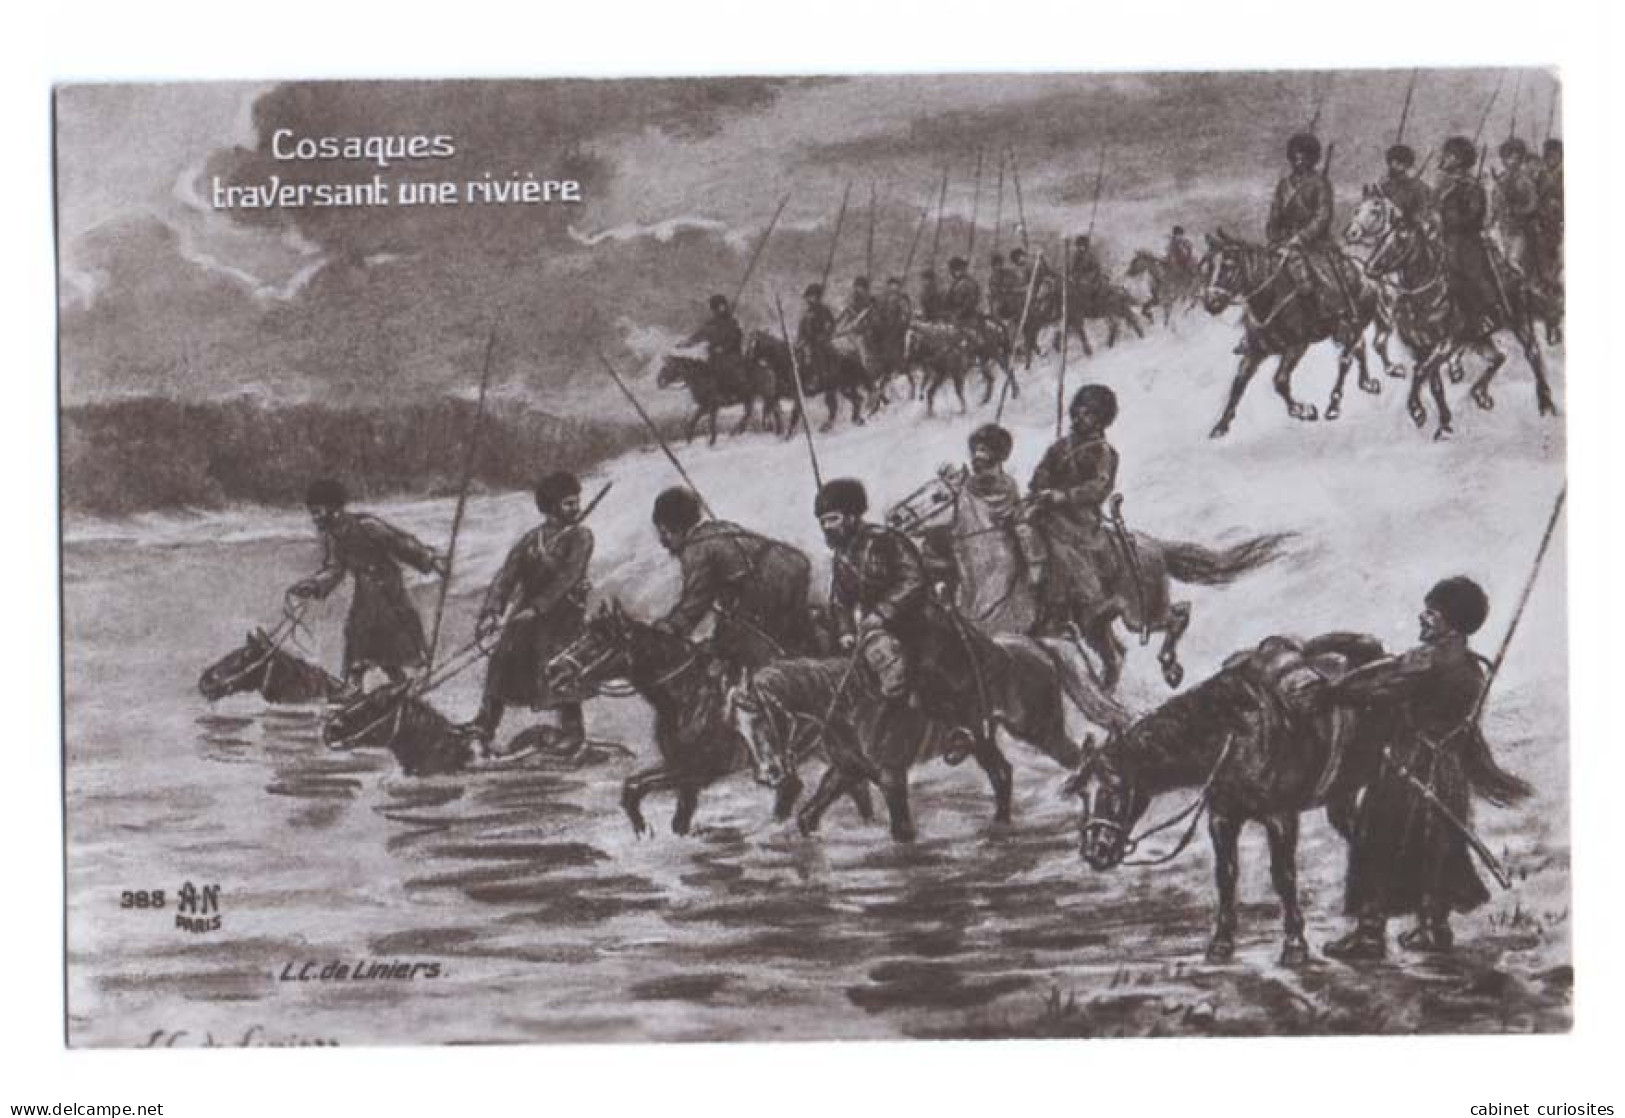 COSAQUES TRAVERSANT UNE RIVIÈRE - Illustration De L. C. De Liniers - Carte écrite En 1915 - Galerie Patriotique - War 1914-18